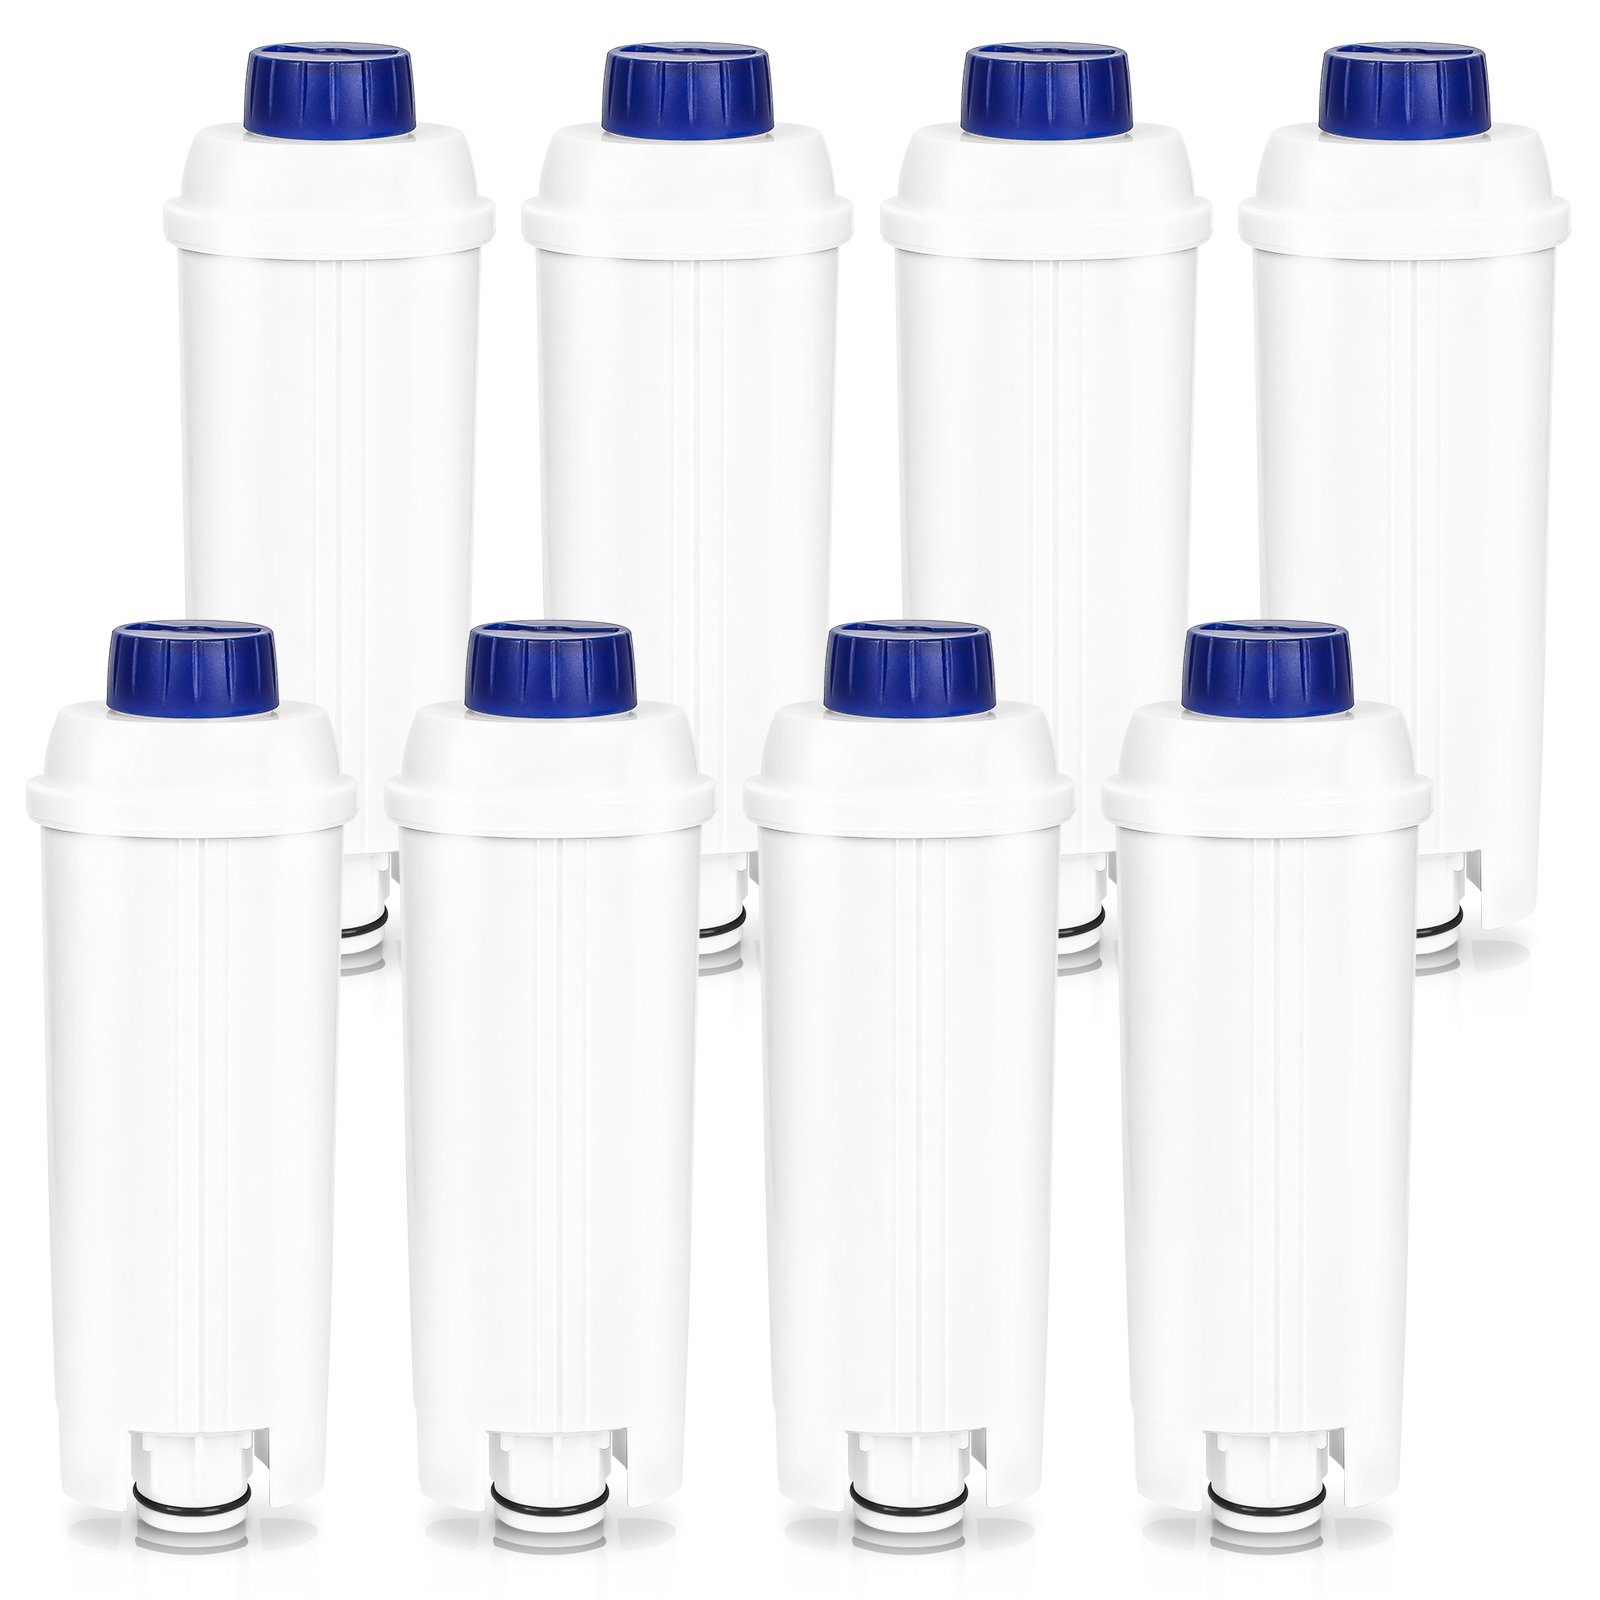 Gimisgu Wasserfilter Wasserfilter für DeLonghi DLSC002 Kaffeemaschine 8er Set | Filter